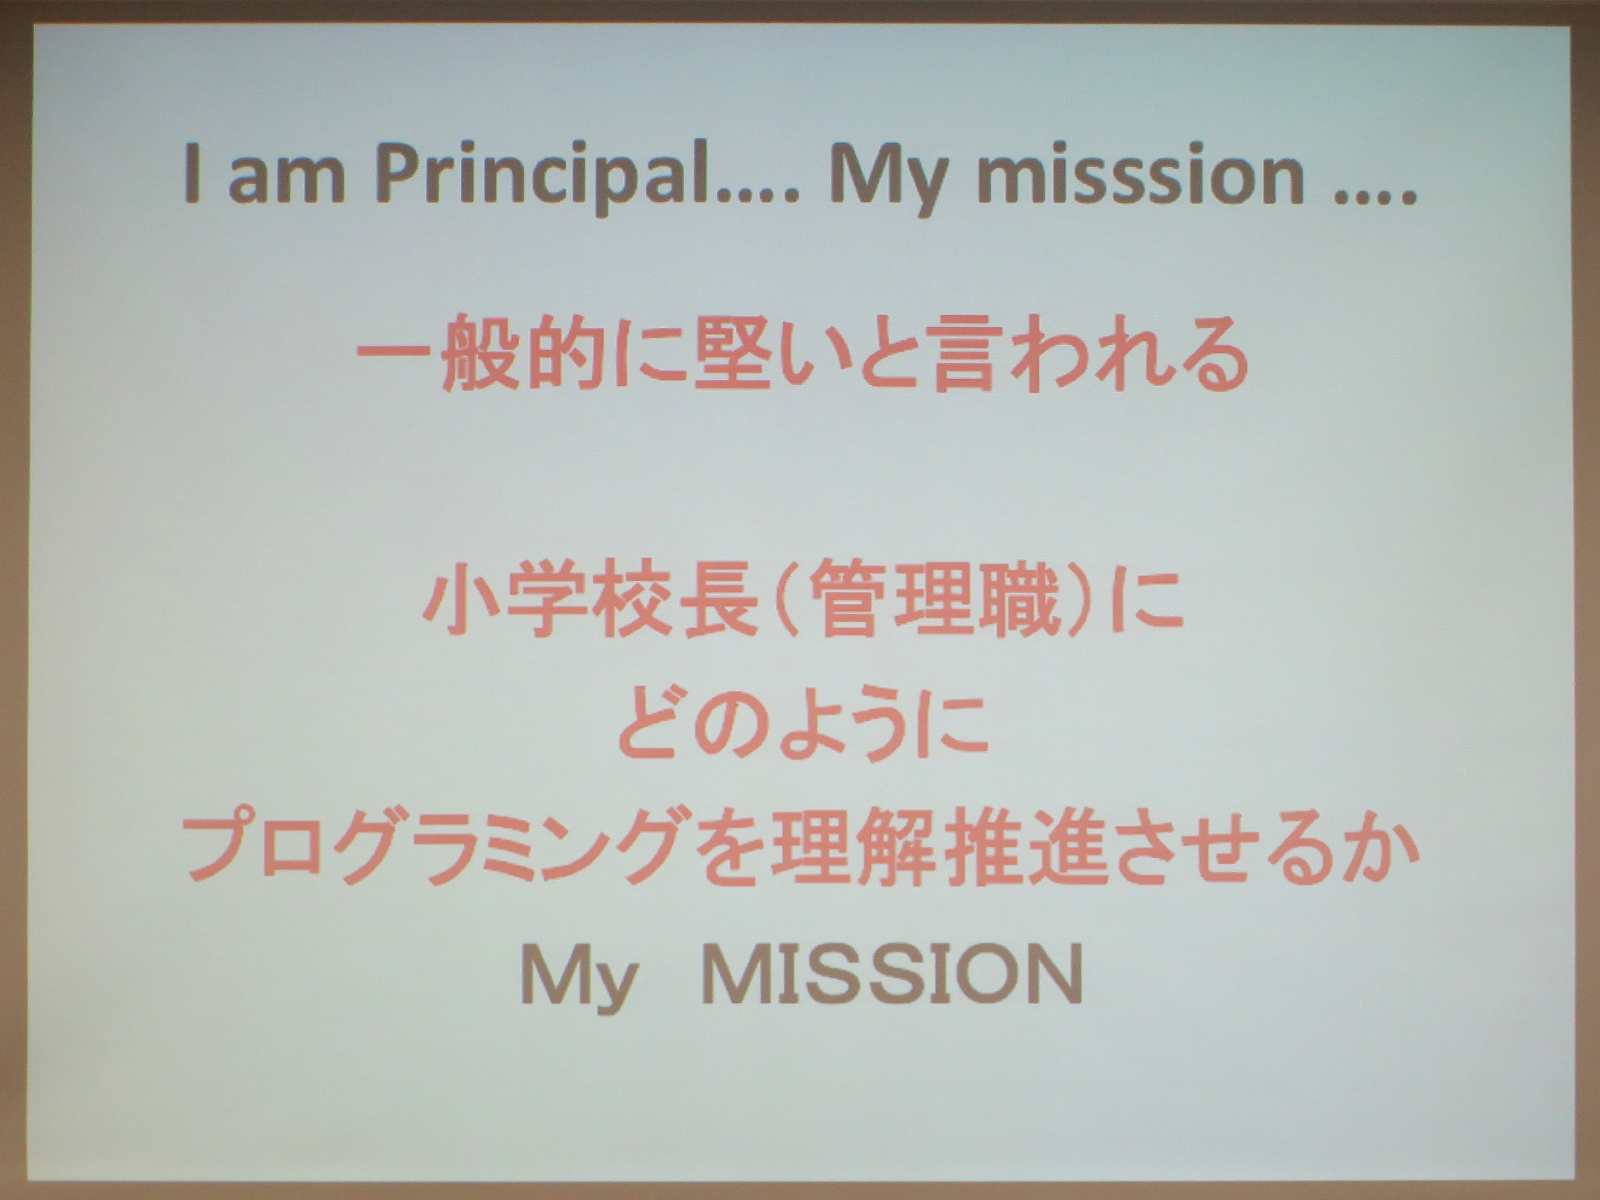 校長歴10年の福田校長自身の経験から、小学校長にプログラミングを理解させるための提言が披露された